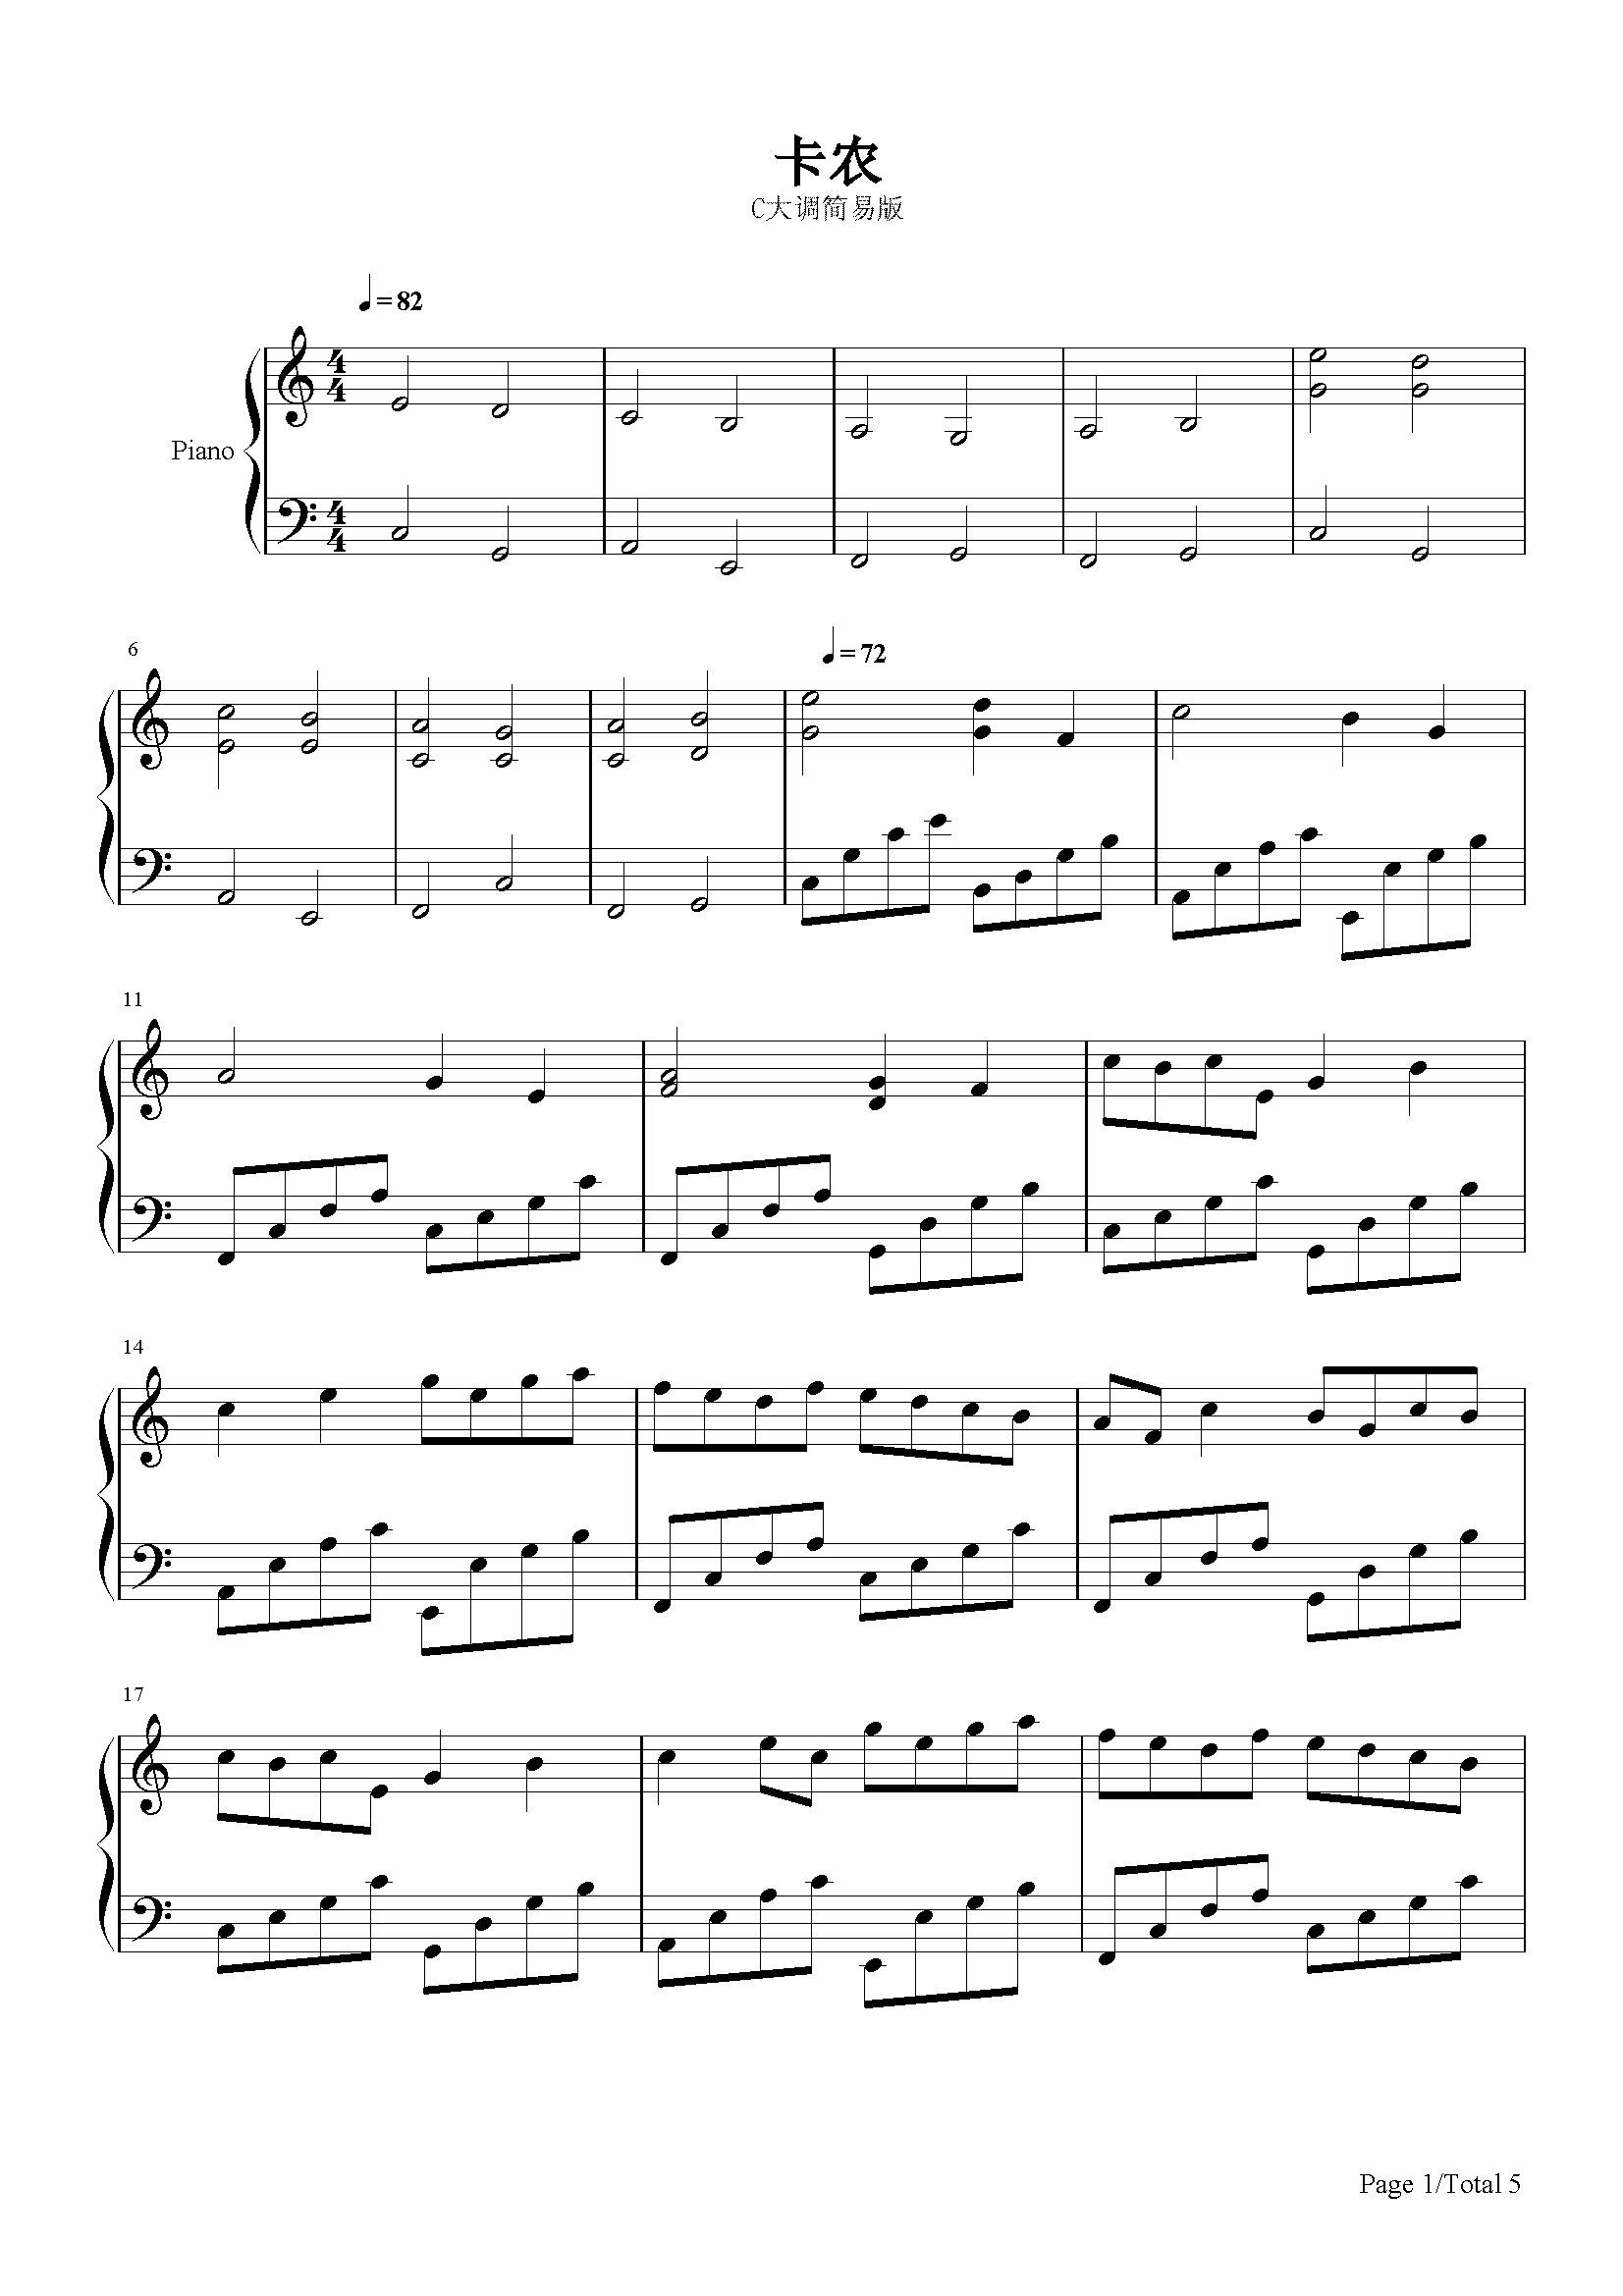 卡农钢琴曲原版c大调曲谱(c调卡农钢琴曲简谱双手)